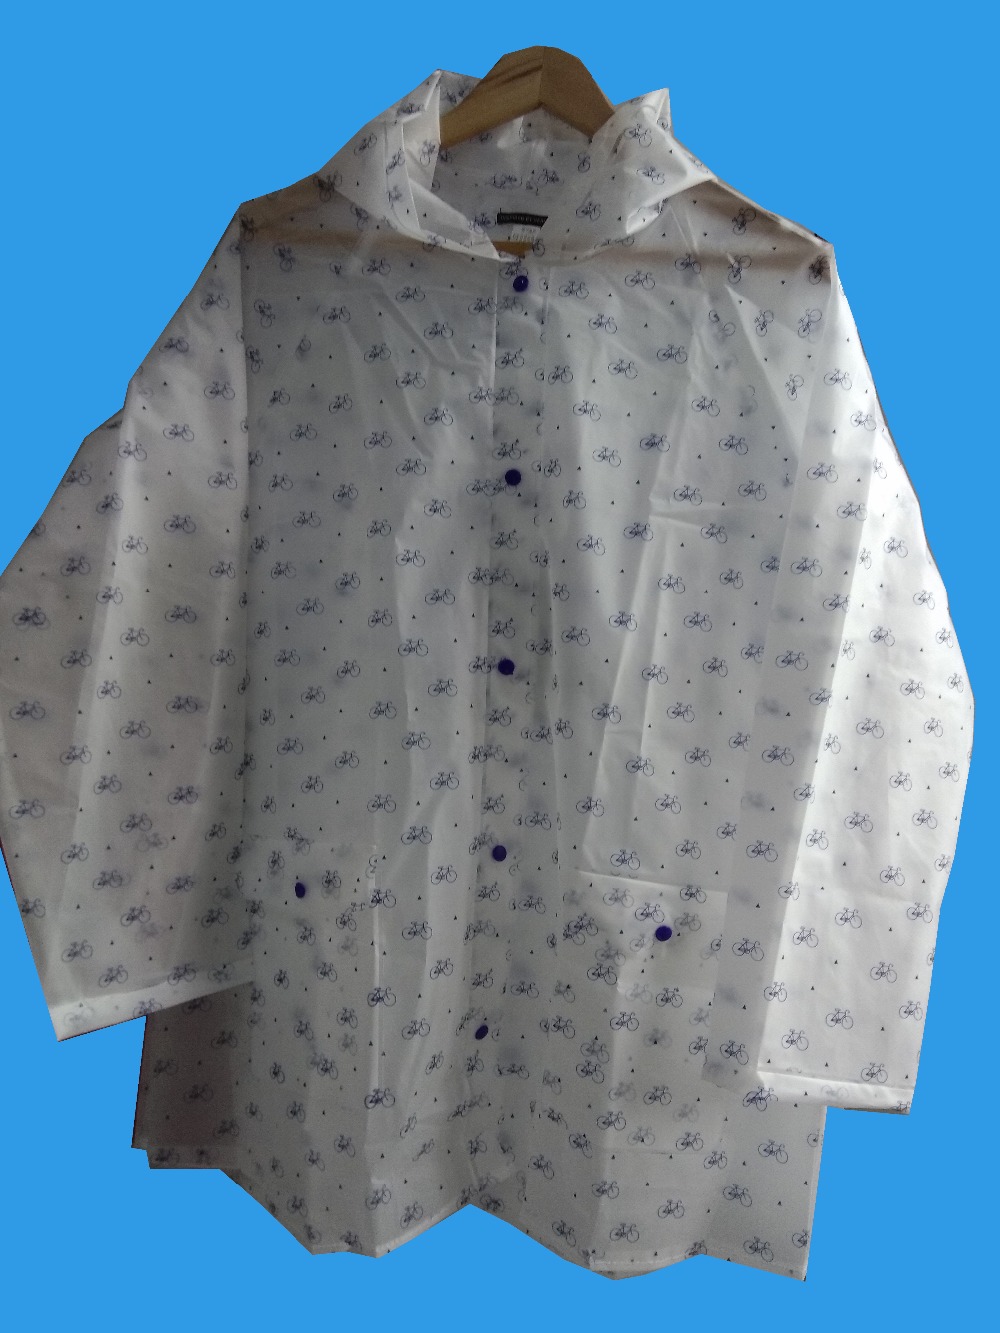 New Pattern Raincoat Transparent font b Poncho b font font b Pocket b font Hooded Raincoat